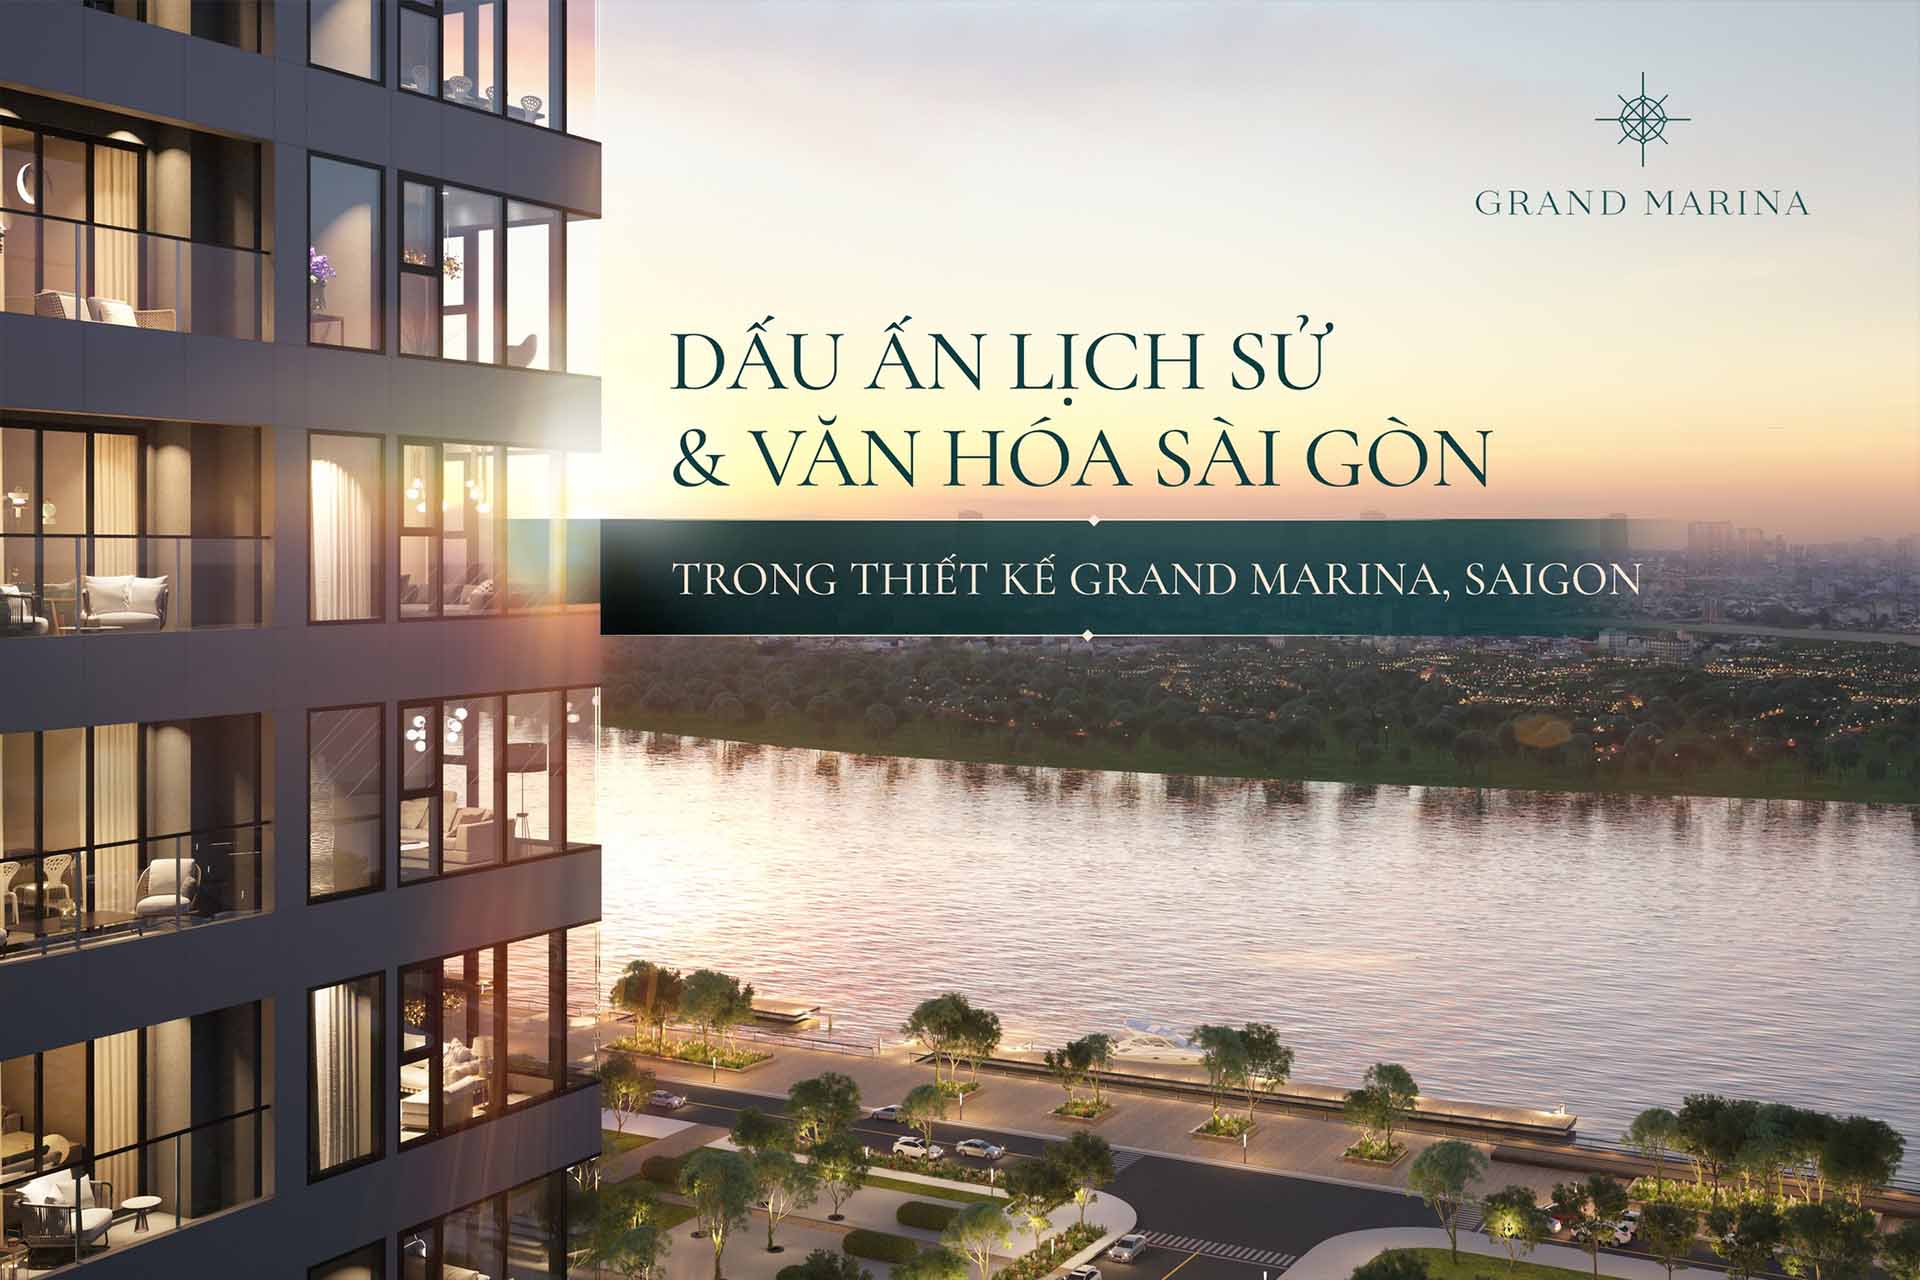 Grand Marina Saigon căn hộ hàng hiệu Marriott ghi dấu ấn lịch sử và văn hoá Sài Gòn trong từng đường nét thiết kế.